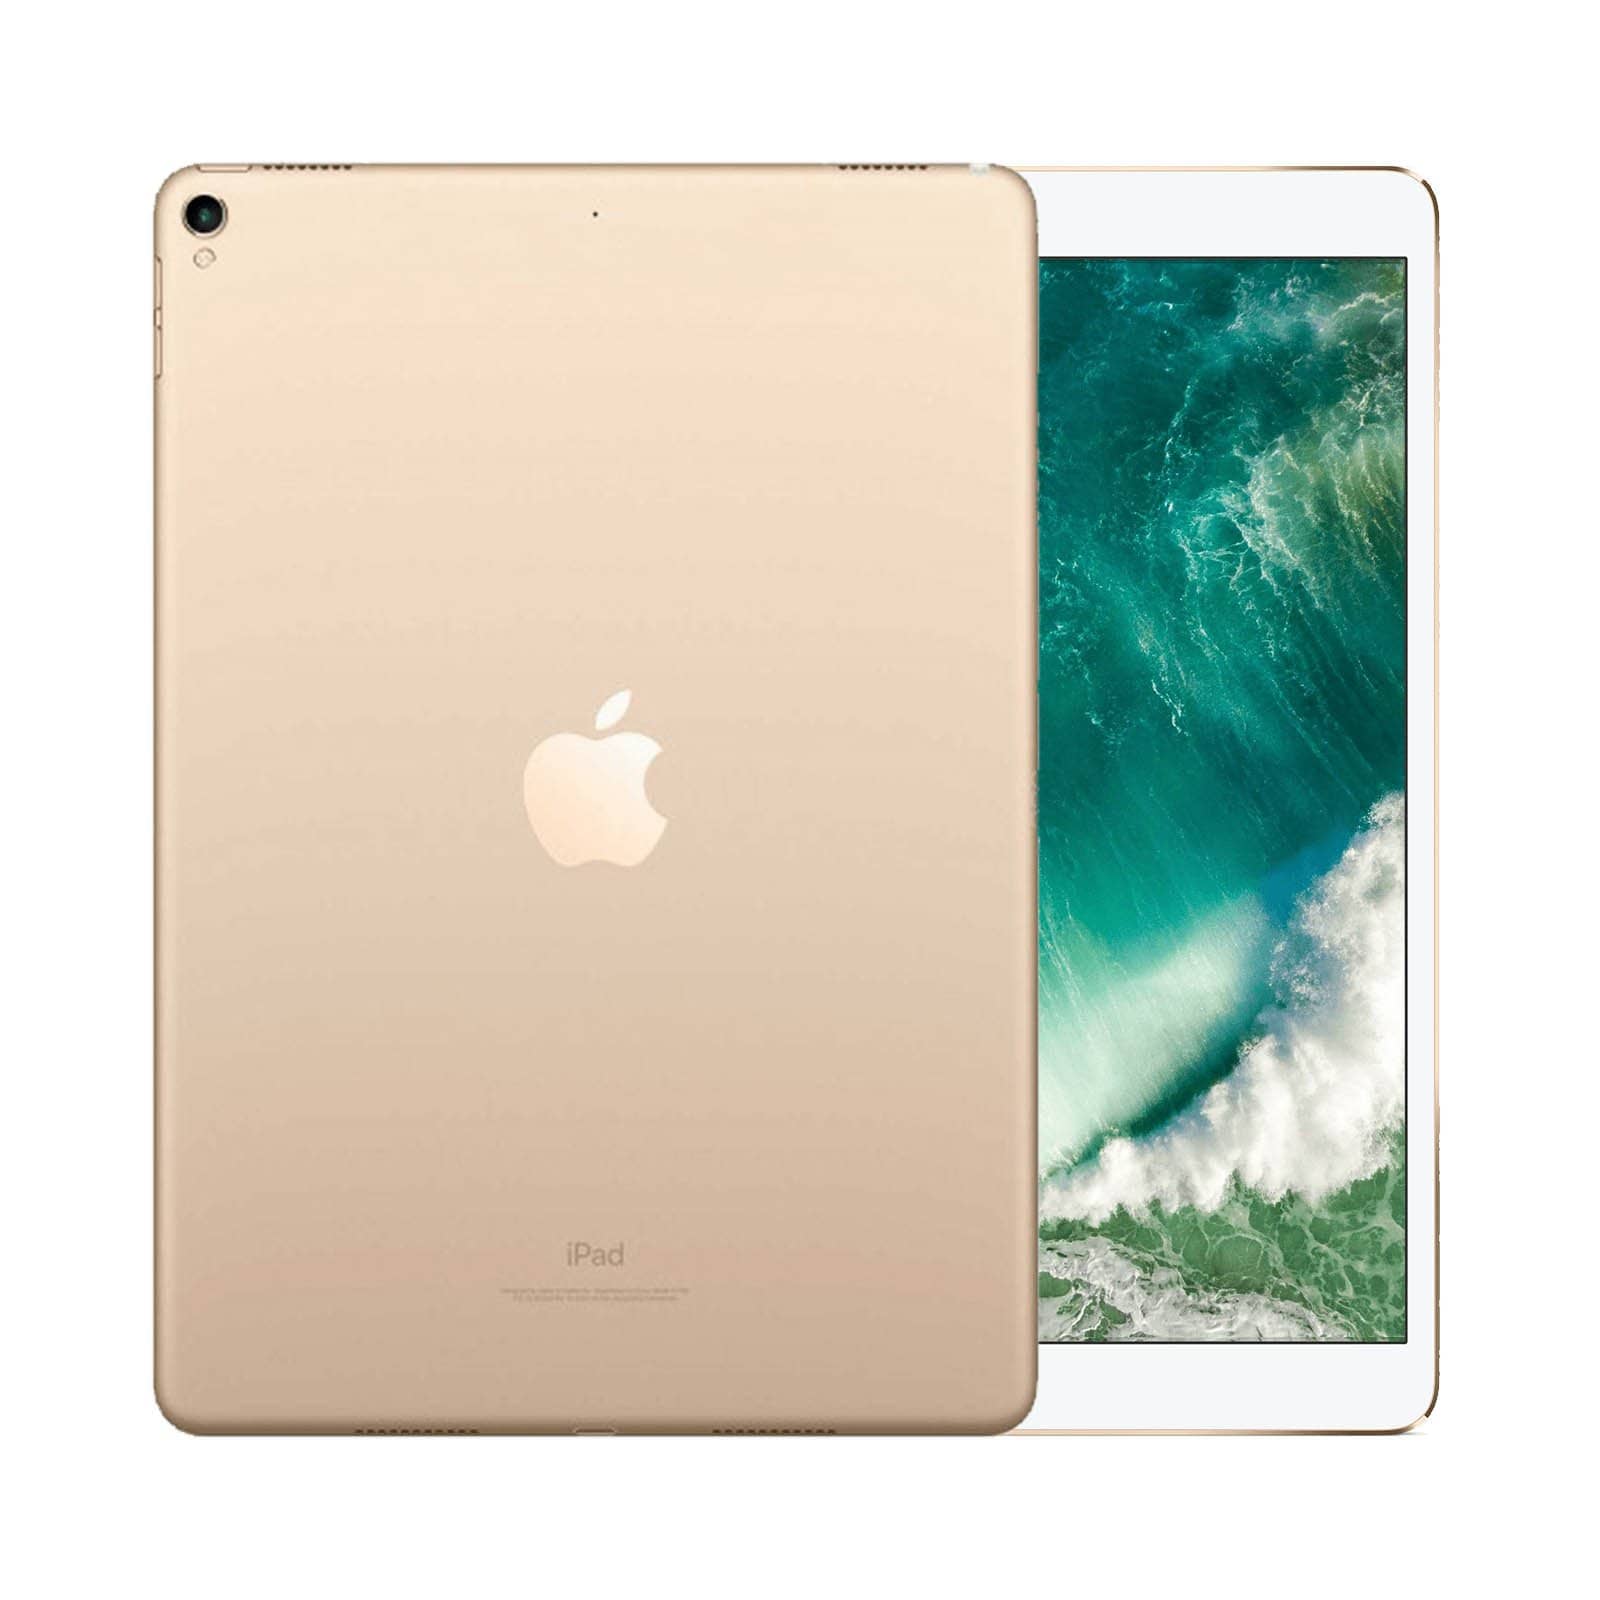 iPad Pro 10.5 Inch 64GB Gold Pristine - WiFi 64GB Gold Pristine